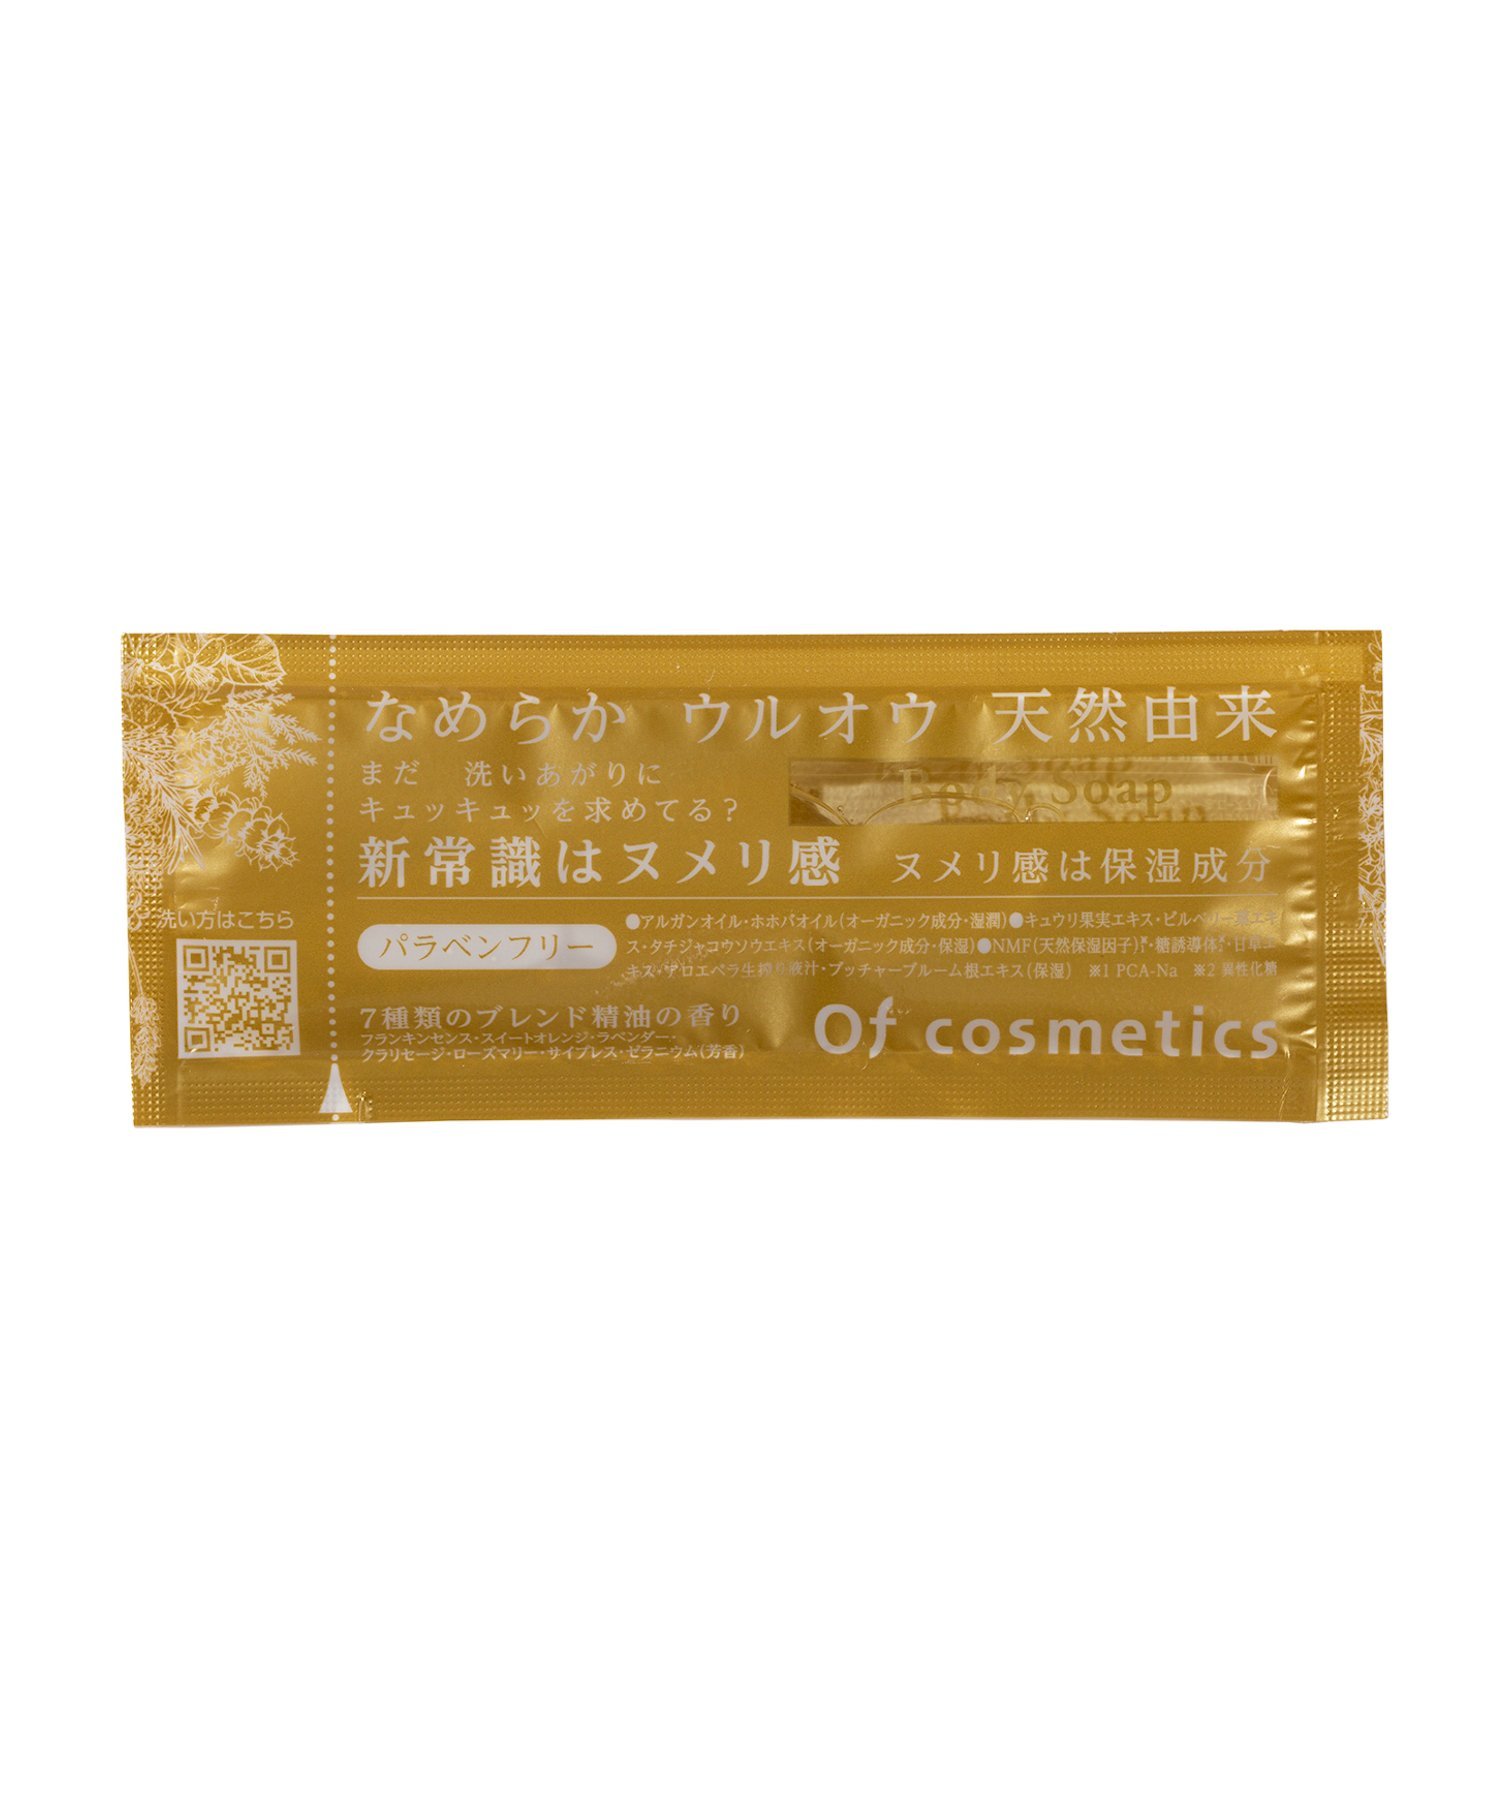 Of cosmetics ソープオブボディ・01-HS 1